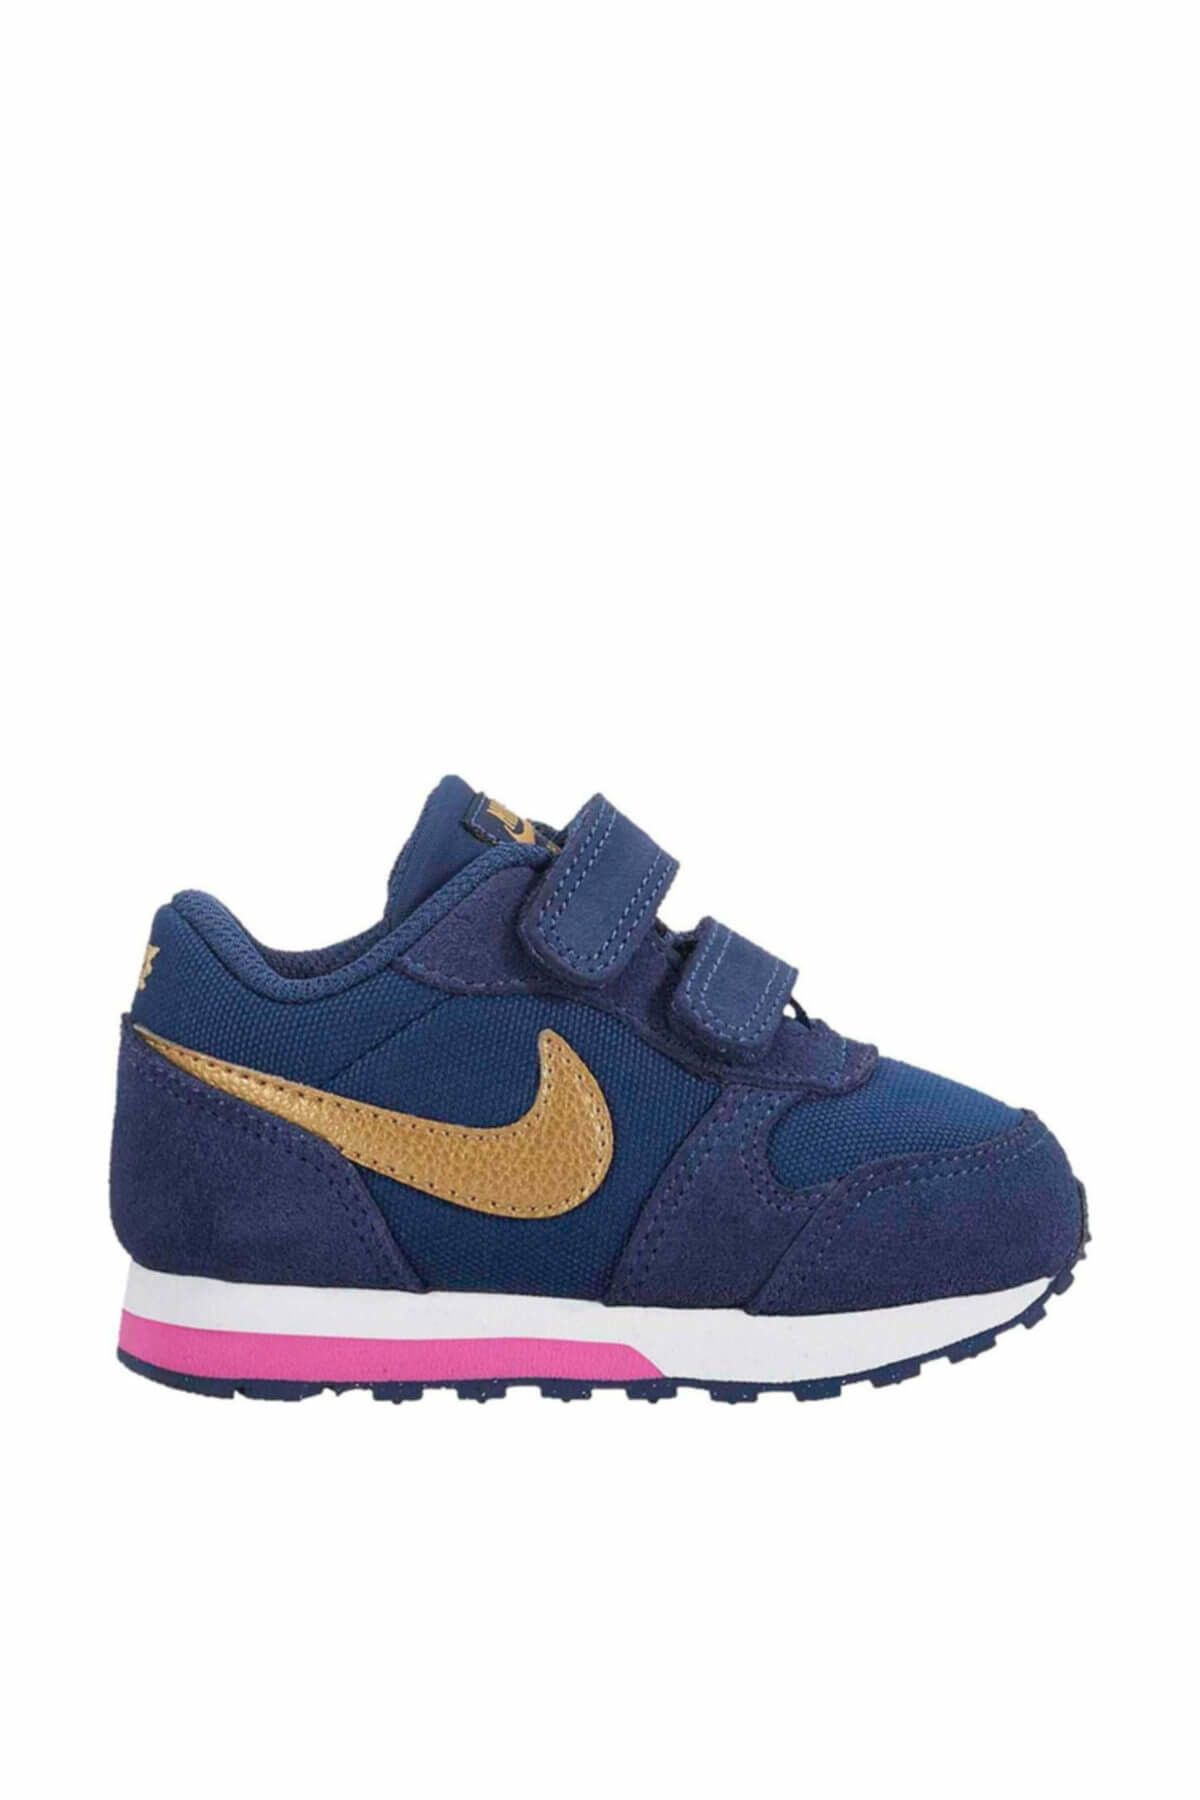 Nike MD Runner Çocuk Ayakkabısı - 807328-406